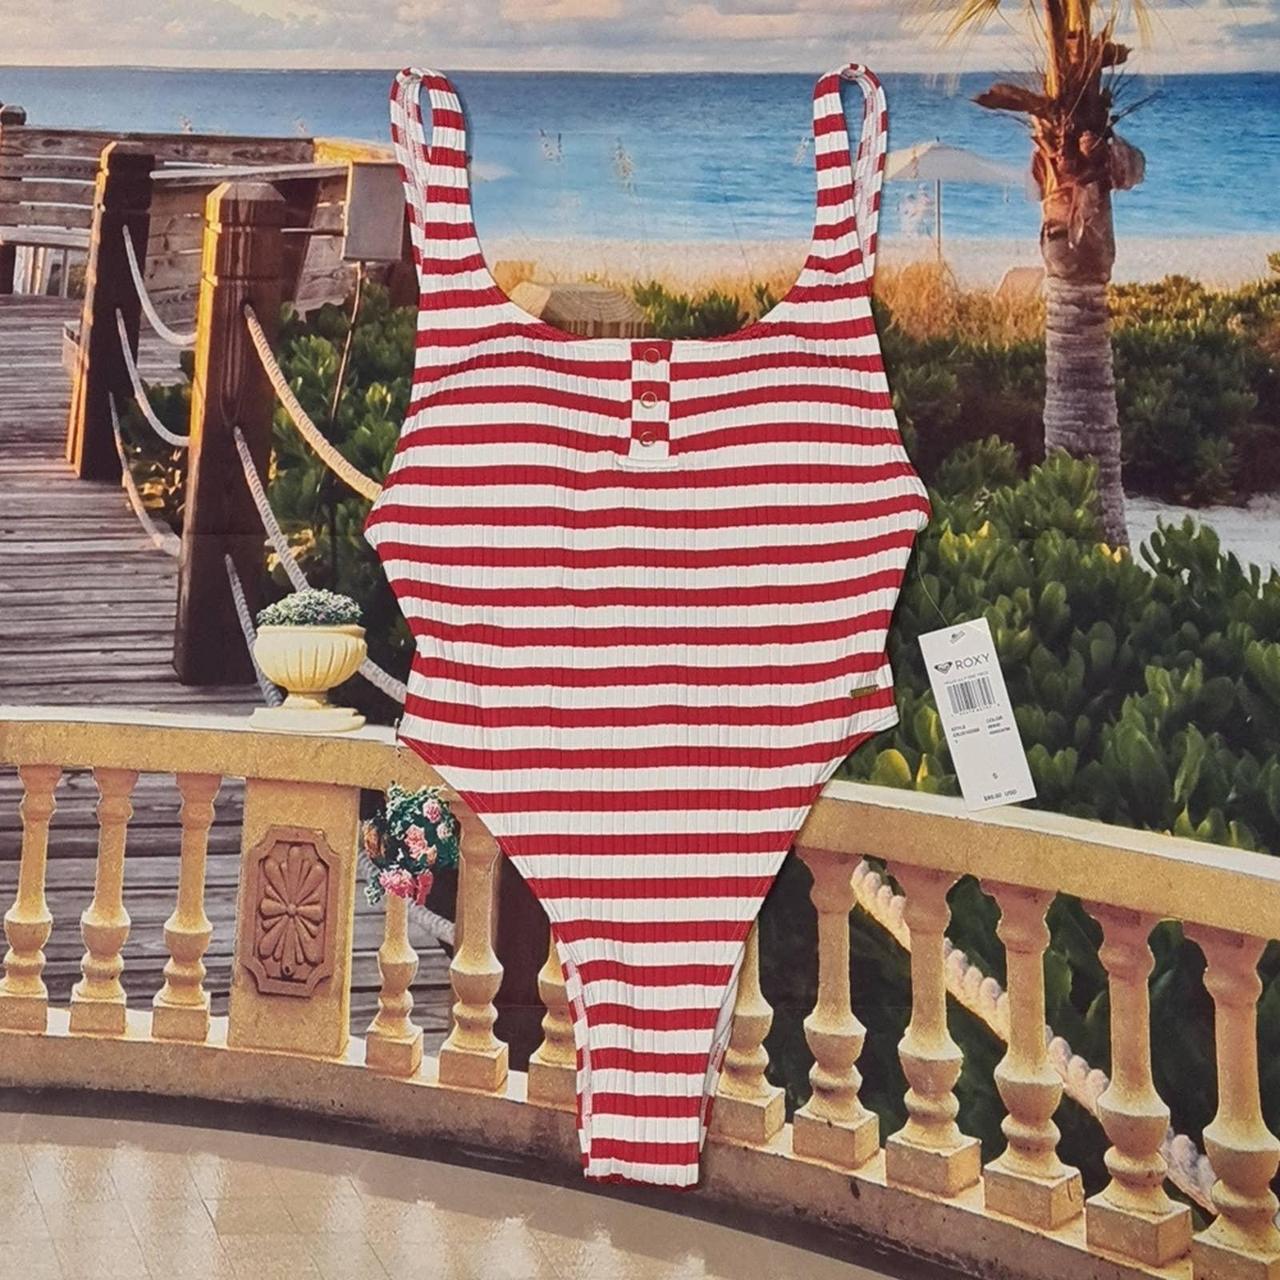 Roxy Red White Striped Bikini One Piece Nwt Small Depop 0284